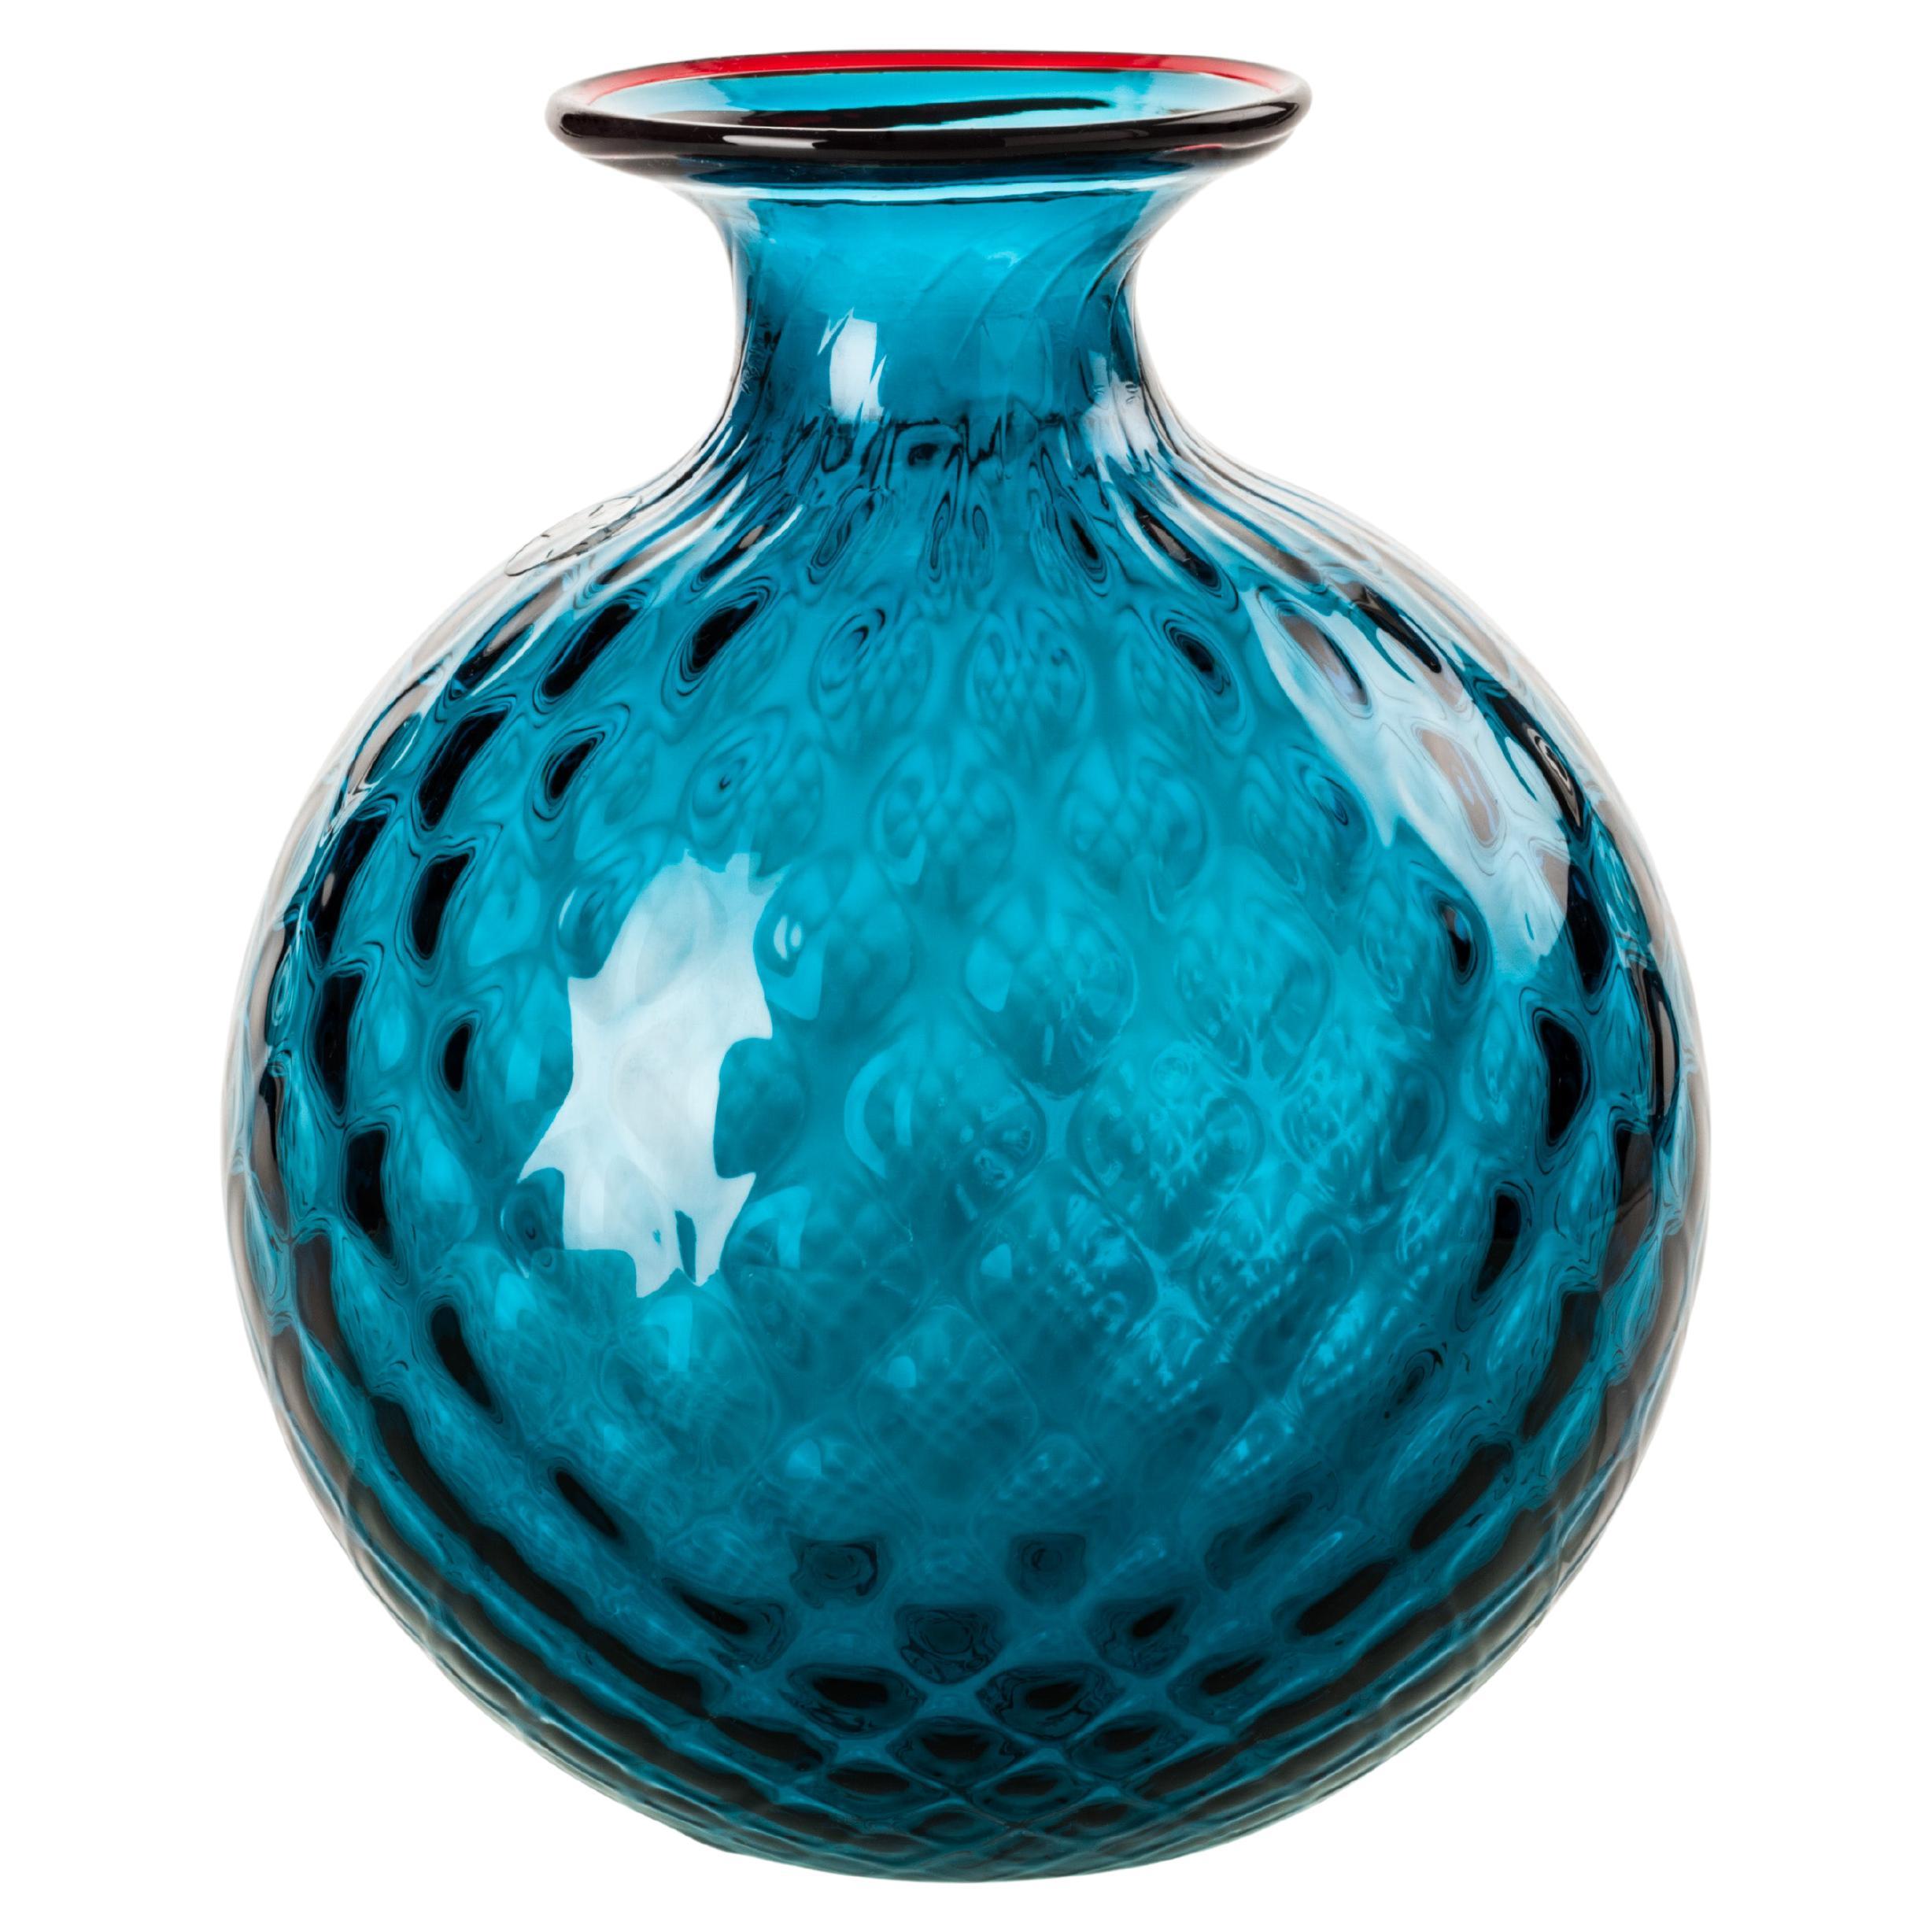 Monofiore Balloton Glass Vase in Horizon Red Thread by Venini For Sale